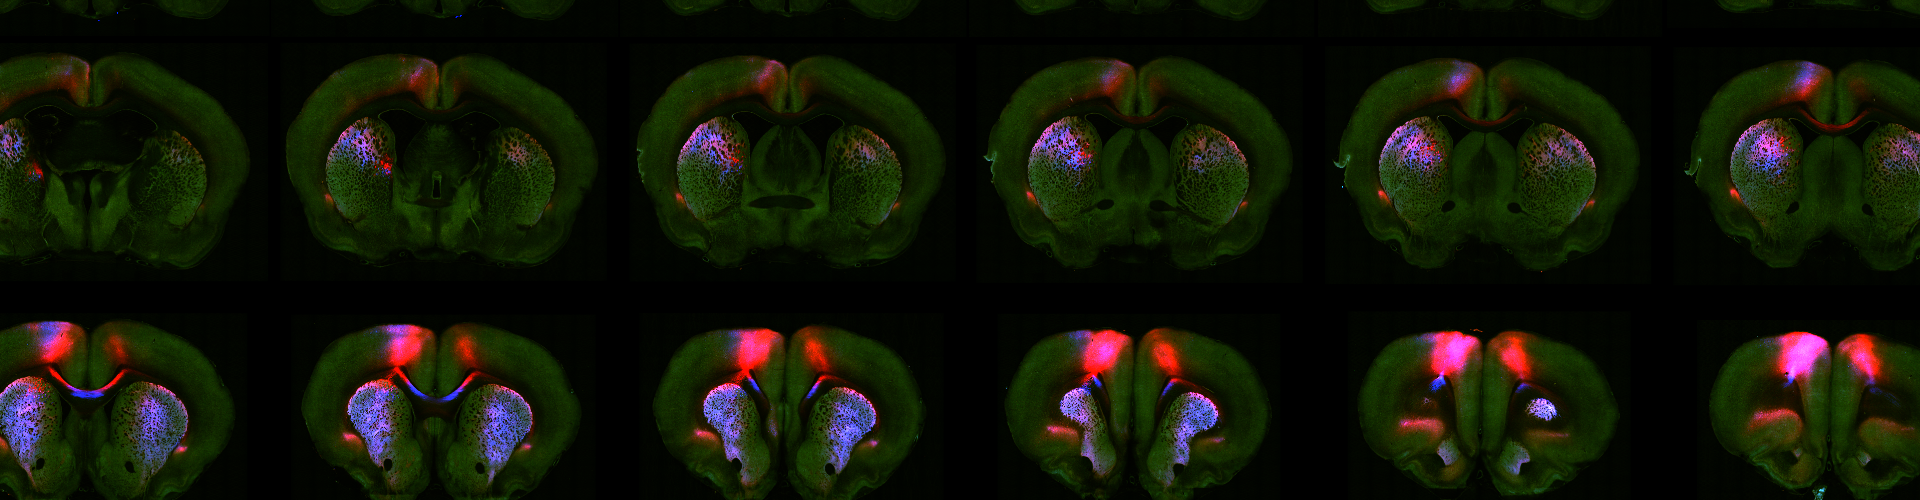 Erlich lab brain imaging